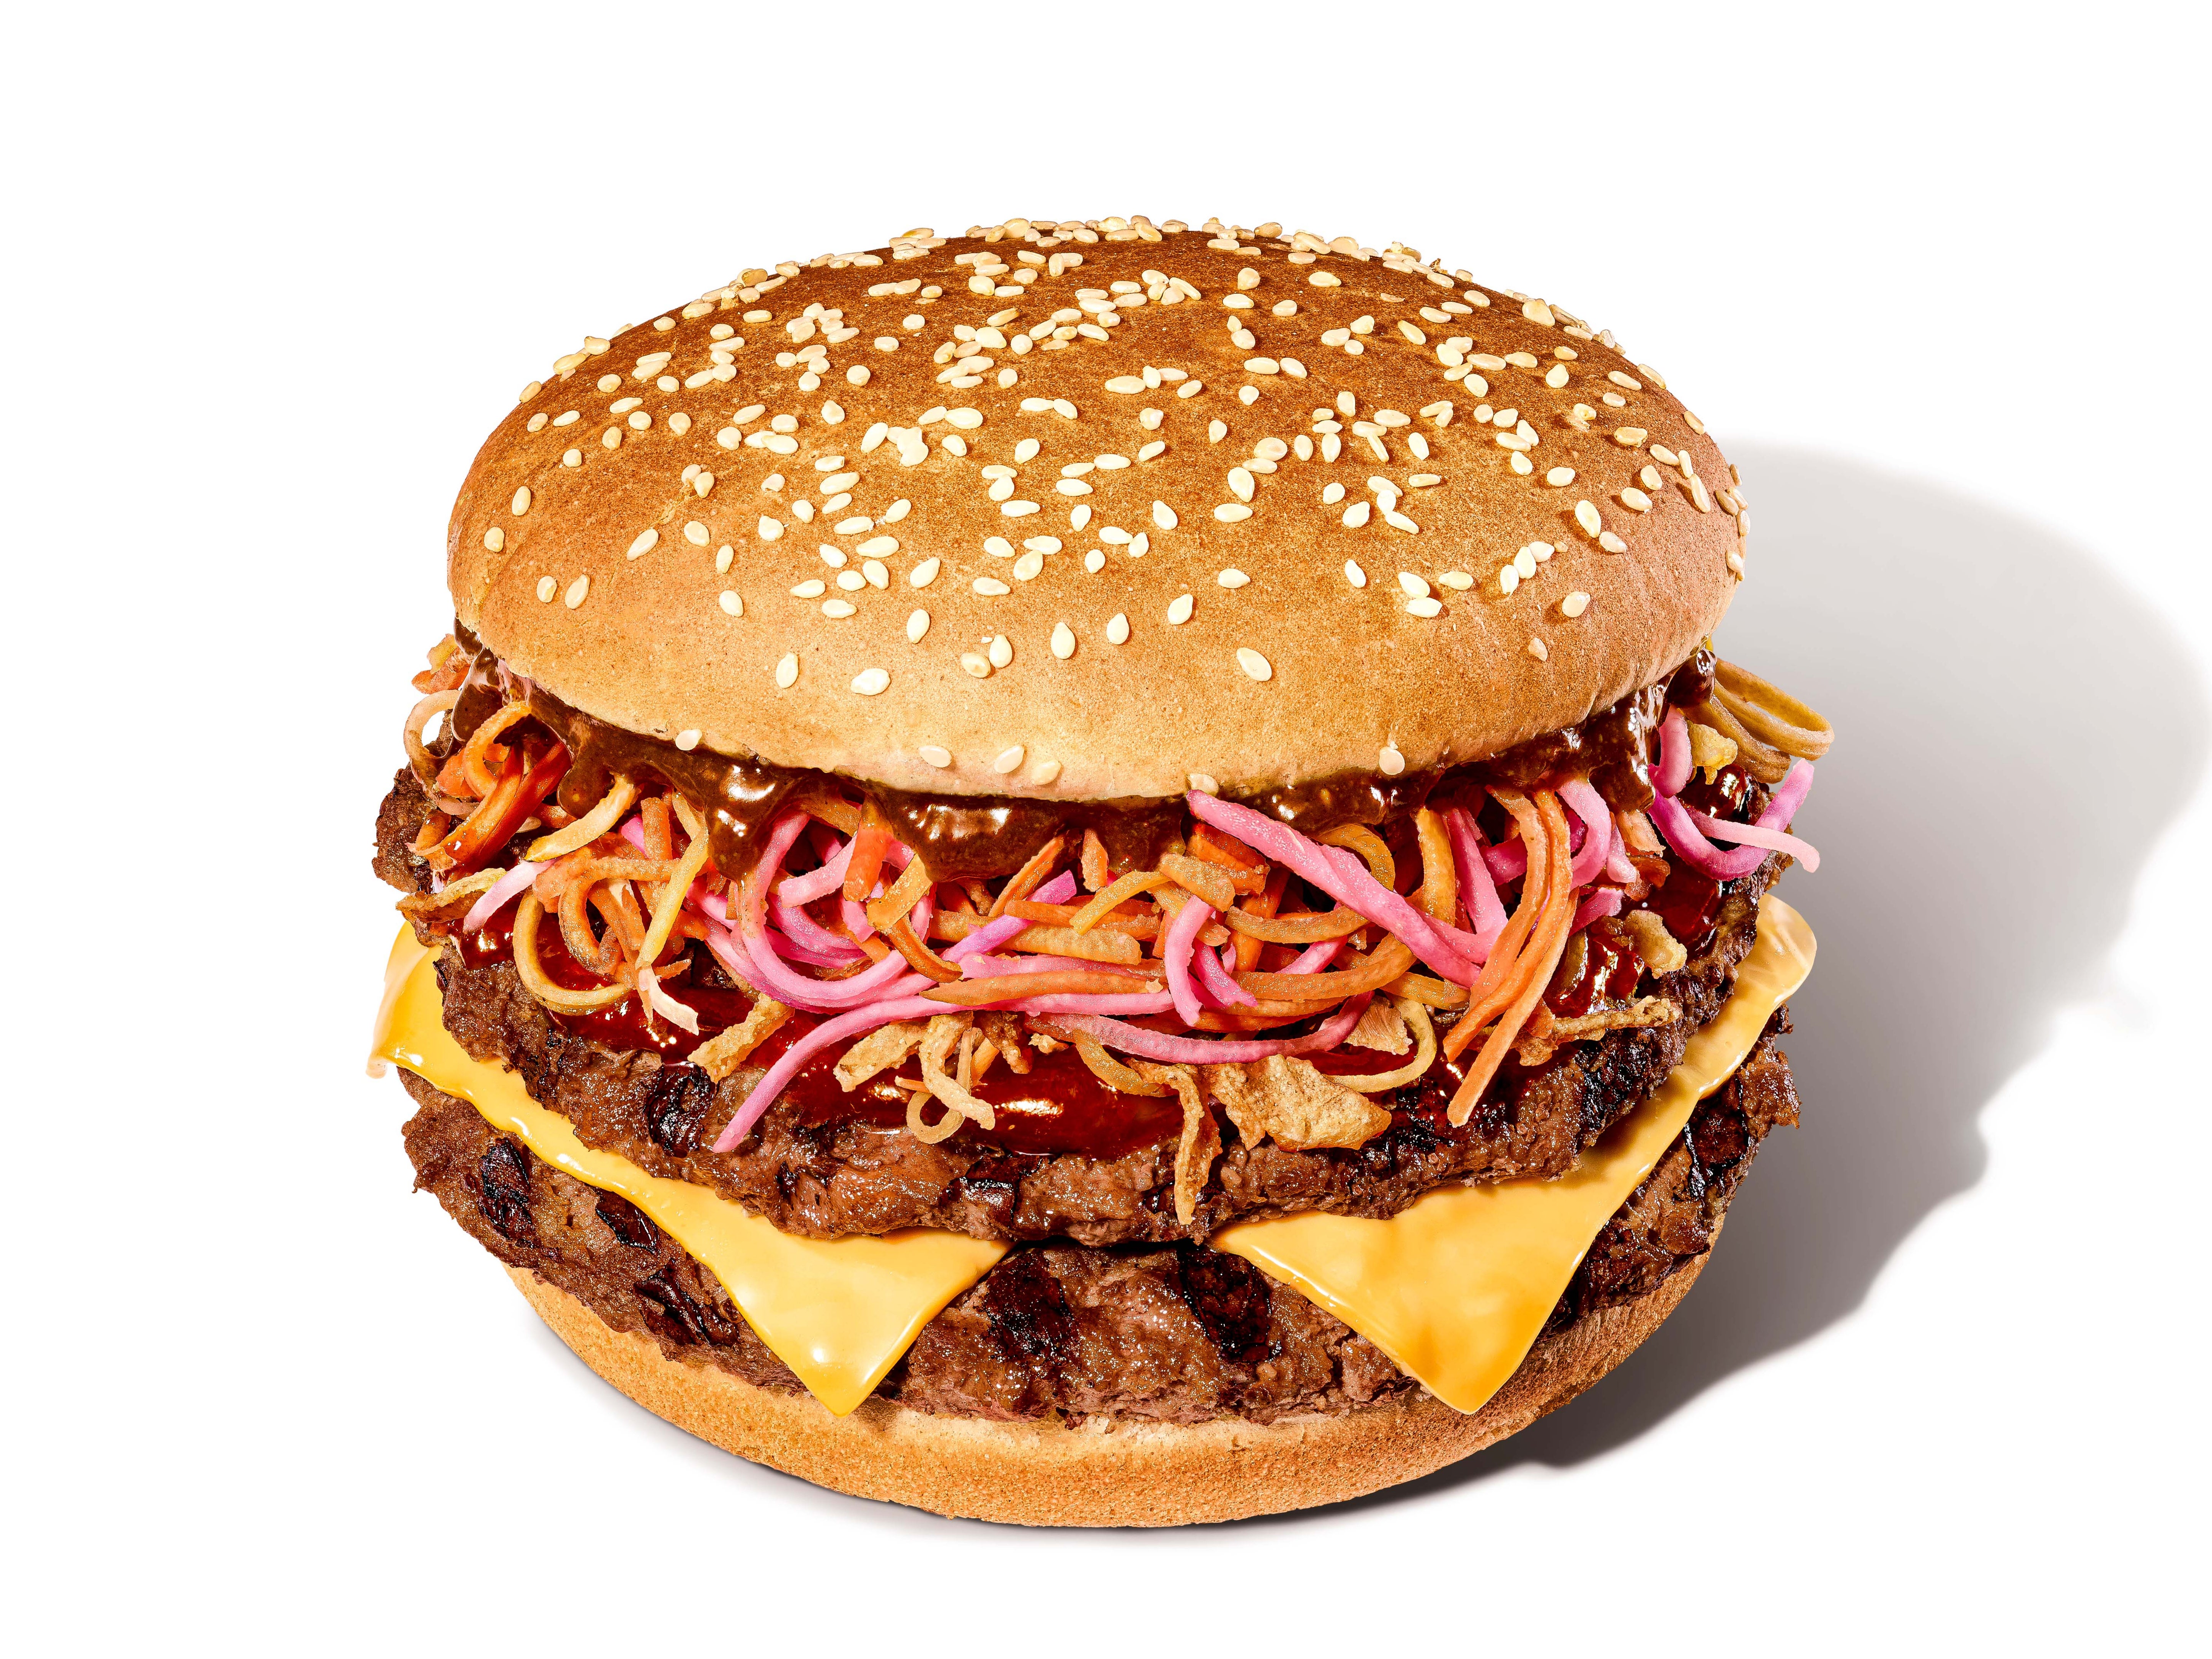 Burger King’s new Katsu Chilli Whopper